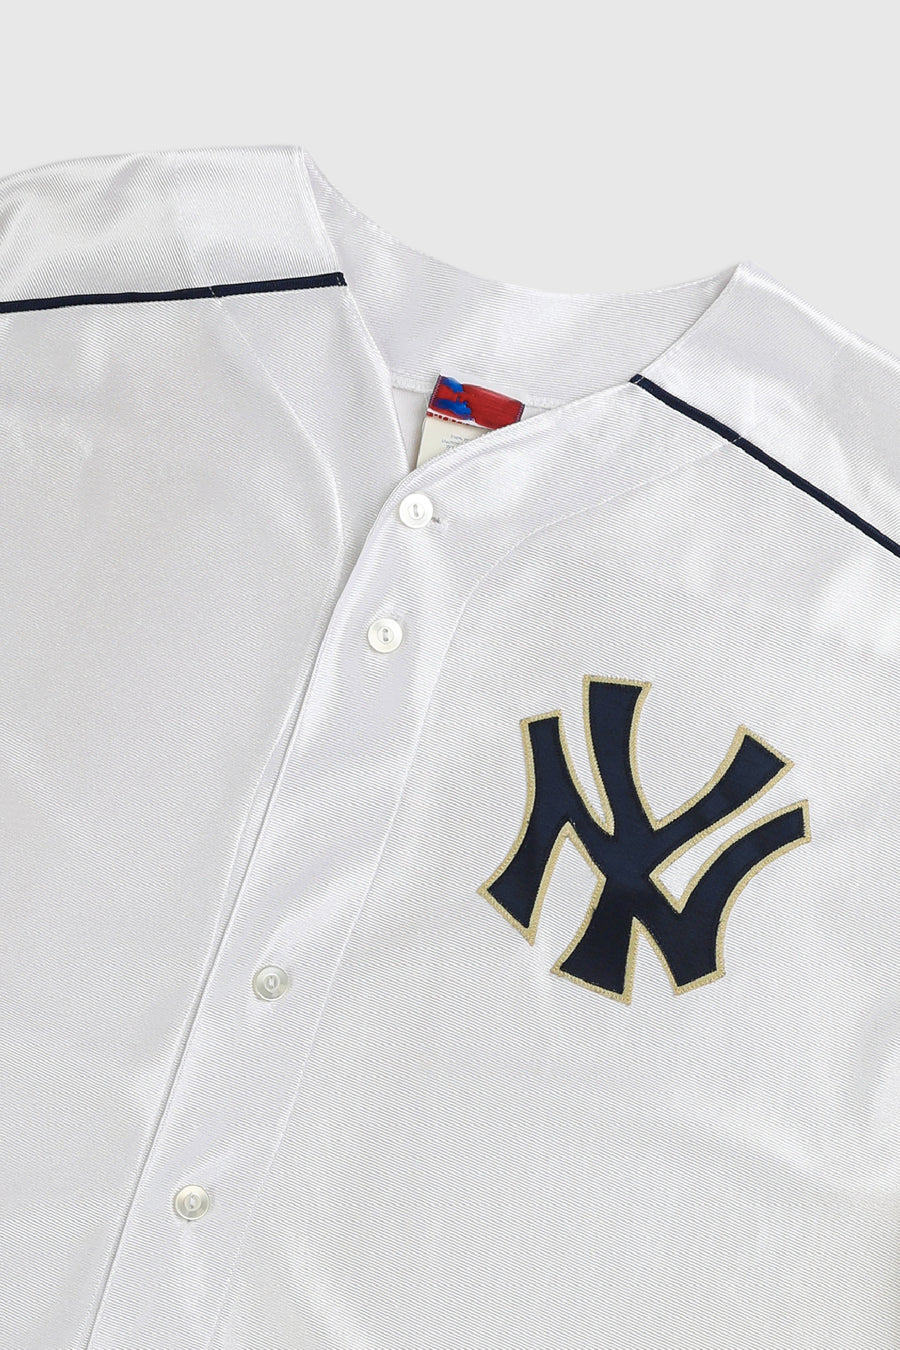 Vintage NY Yankees MLB Baseball Jersey - XL